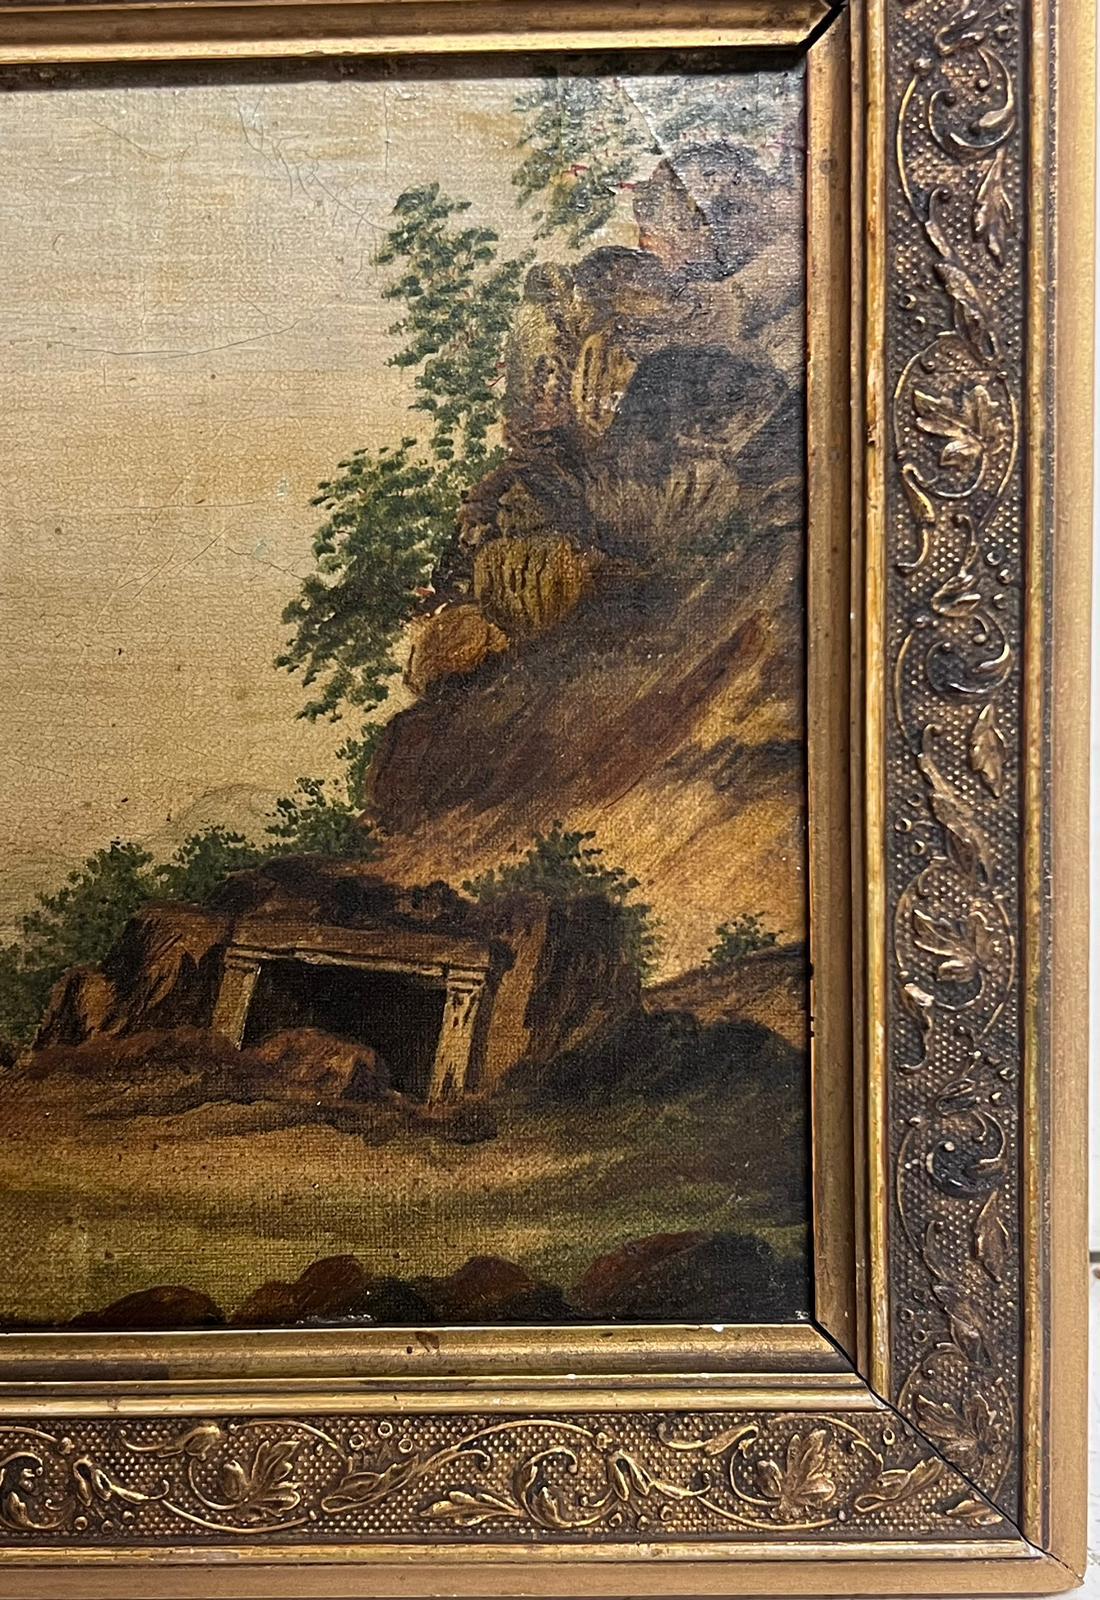 Die klassische italienische Landschaft
Italienischer Künstler, um 1800er Jahre
Öl auf Leinwand auf Karton aufgezogen, gerahmt
Gerahmt: 9,5 x 13 Zoll
Pappe: 7 x 11 Zoll
Provenienz: Privatsammlung
Zustand: ein paar Schrammen und Flecken auf der